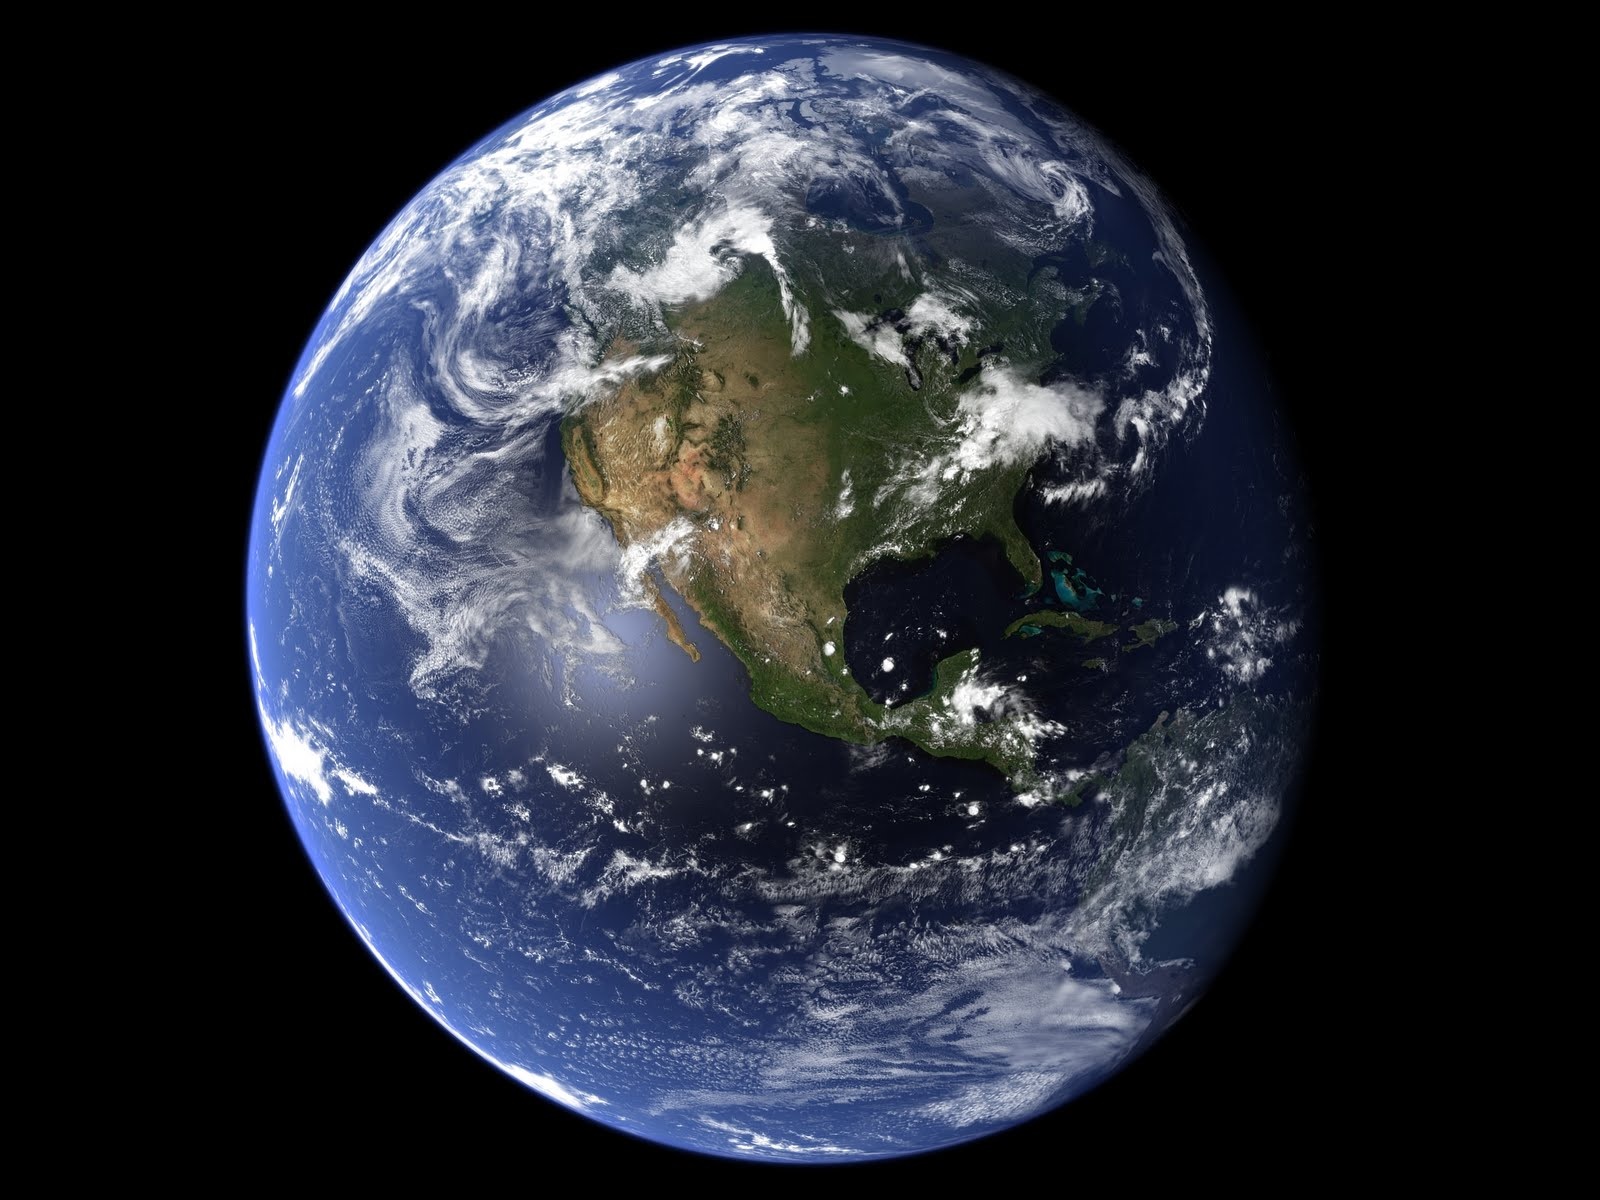 Chắc chắn bạn sẽ bị thu hút bởi tấm ảnh Earthrise tuyệt đẹp - một tác phẩm nghệ thuật biểu tượng làm nên lịch sử. Hãy cùng chiêm ngưỡng bức ảnh này và tận hưởng sự kì diệu của Trái Đất từ góc nhìn mới lạ.